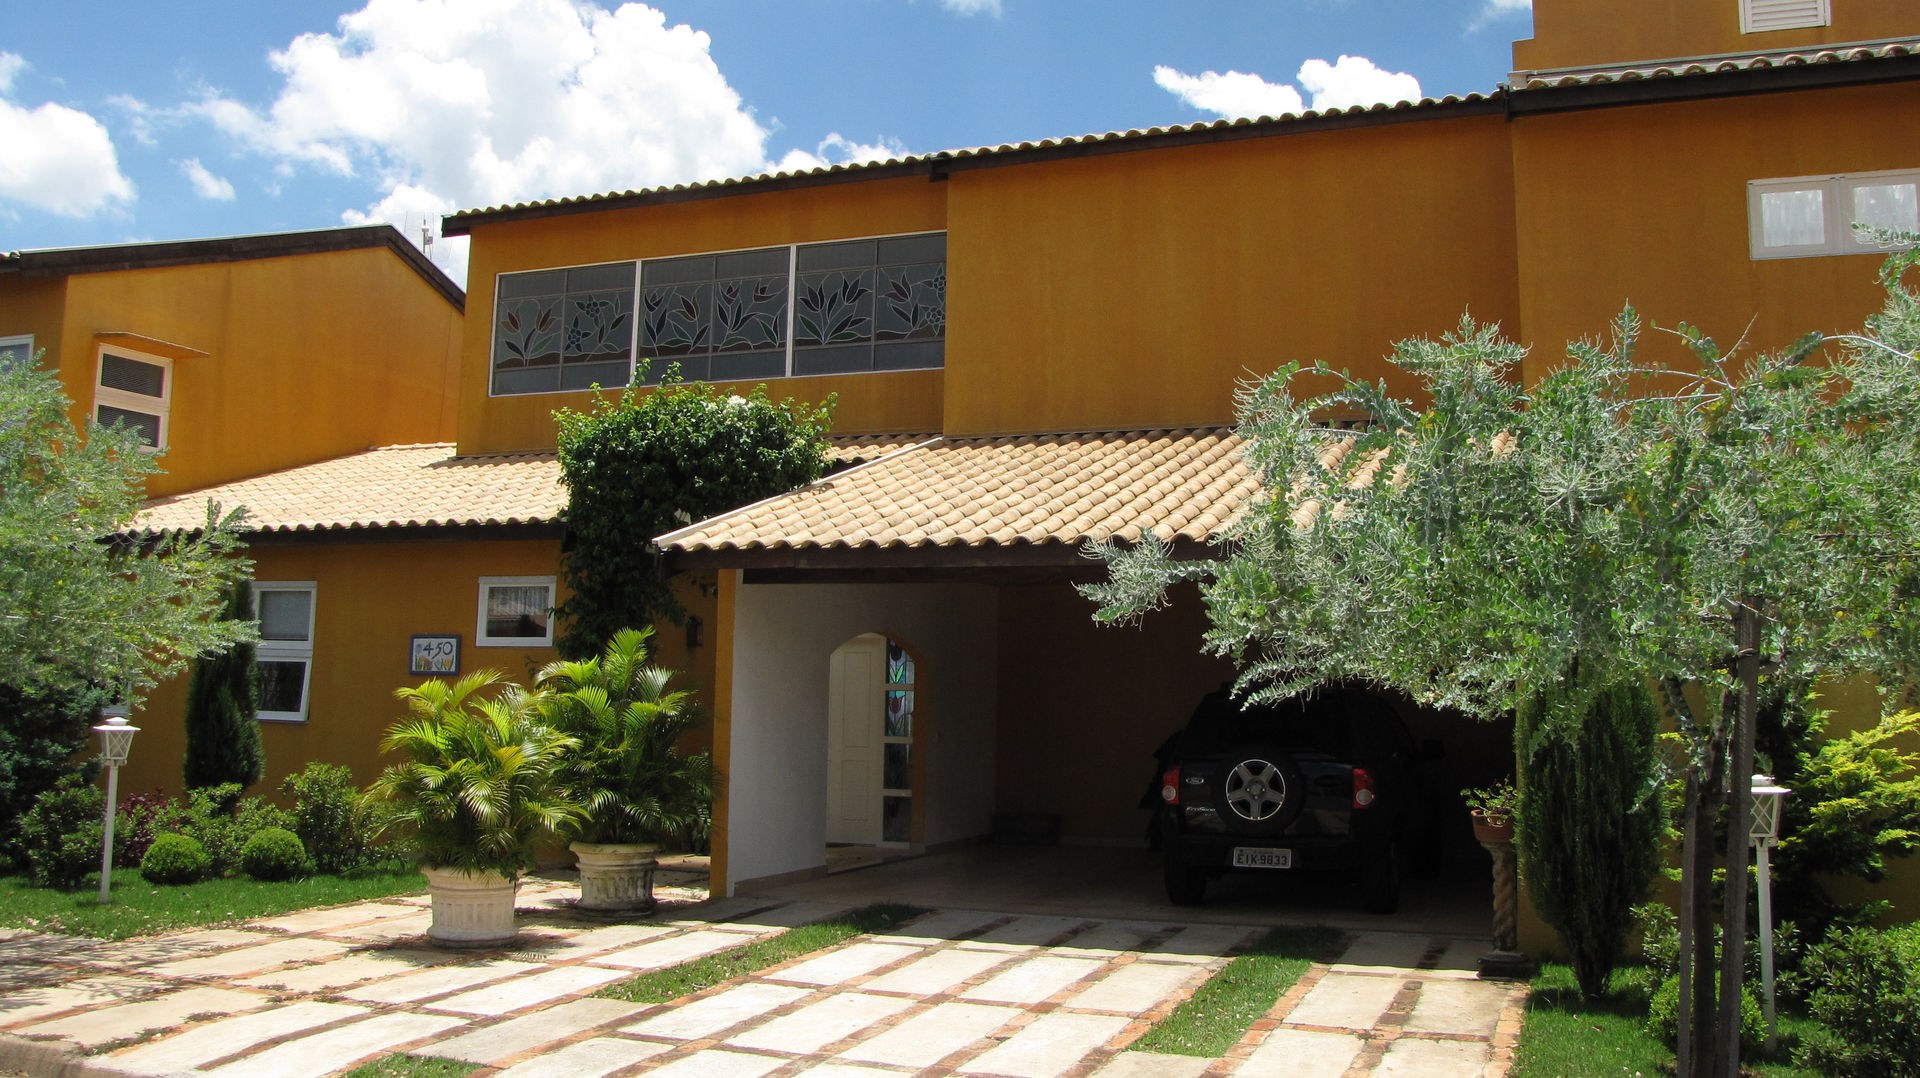 Residência em São Carlos, JMN arquitetura JMN arquitetura منازل التراس